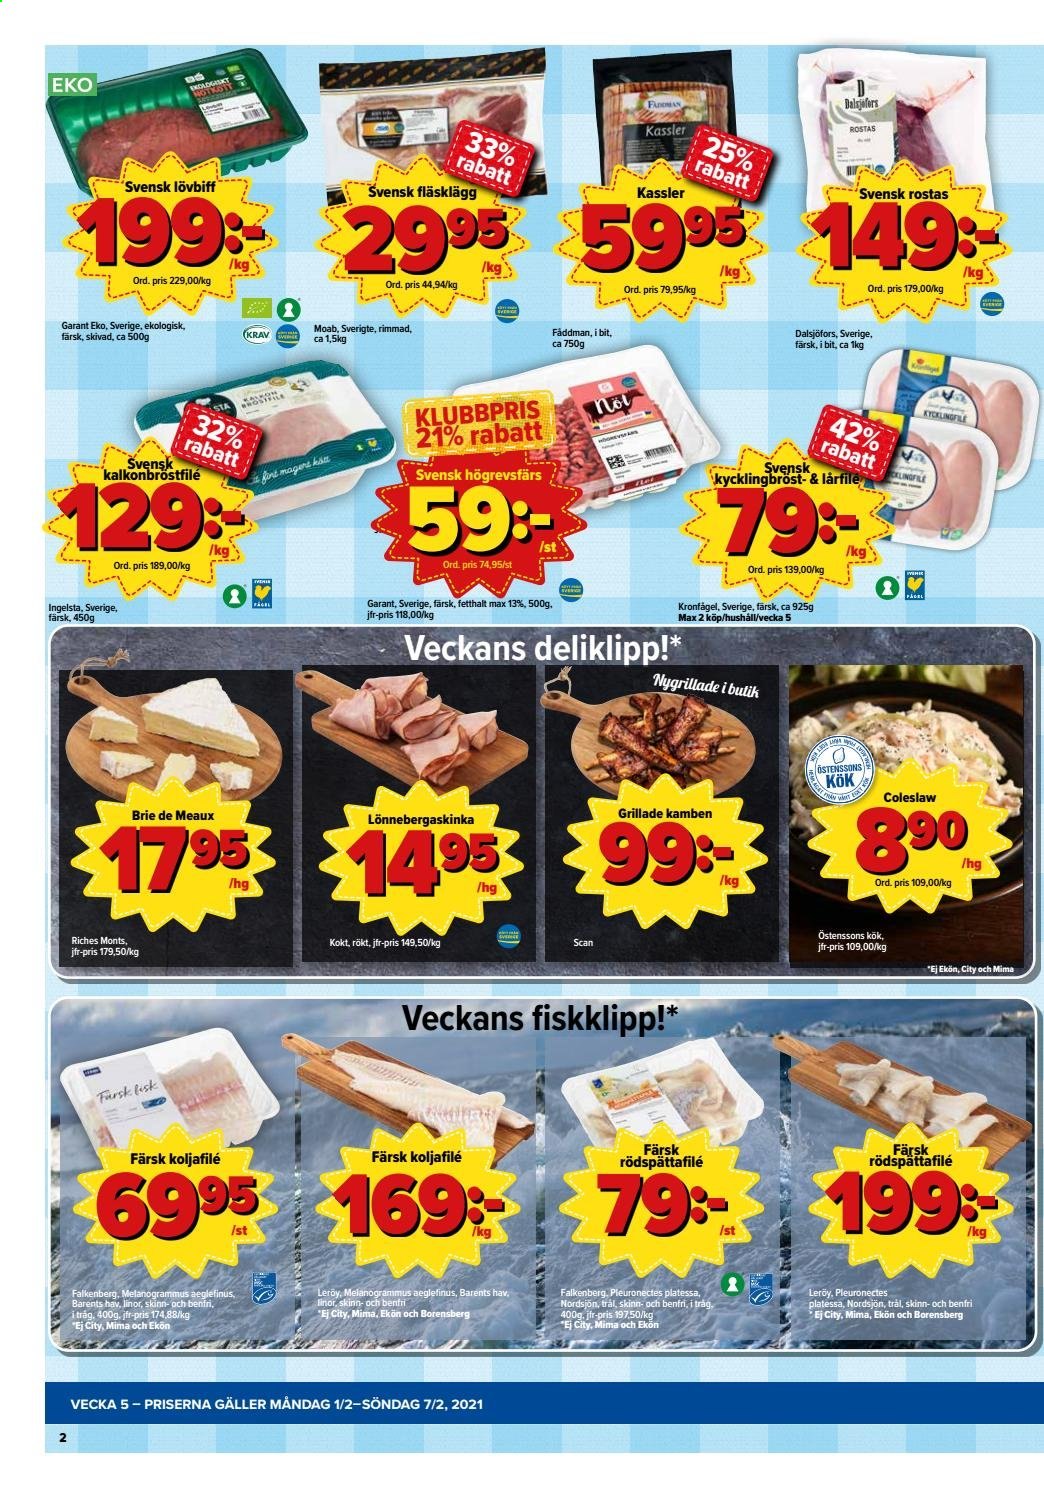 Östenssons reklamblad - 1/2 2021 - 7/2 2021.